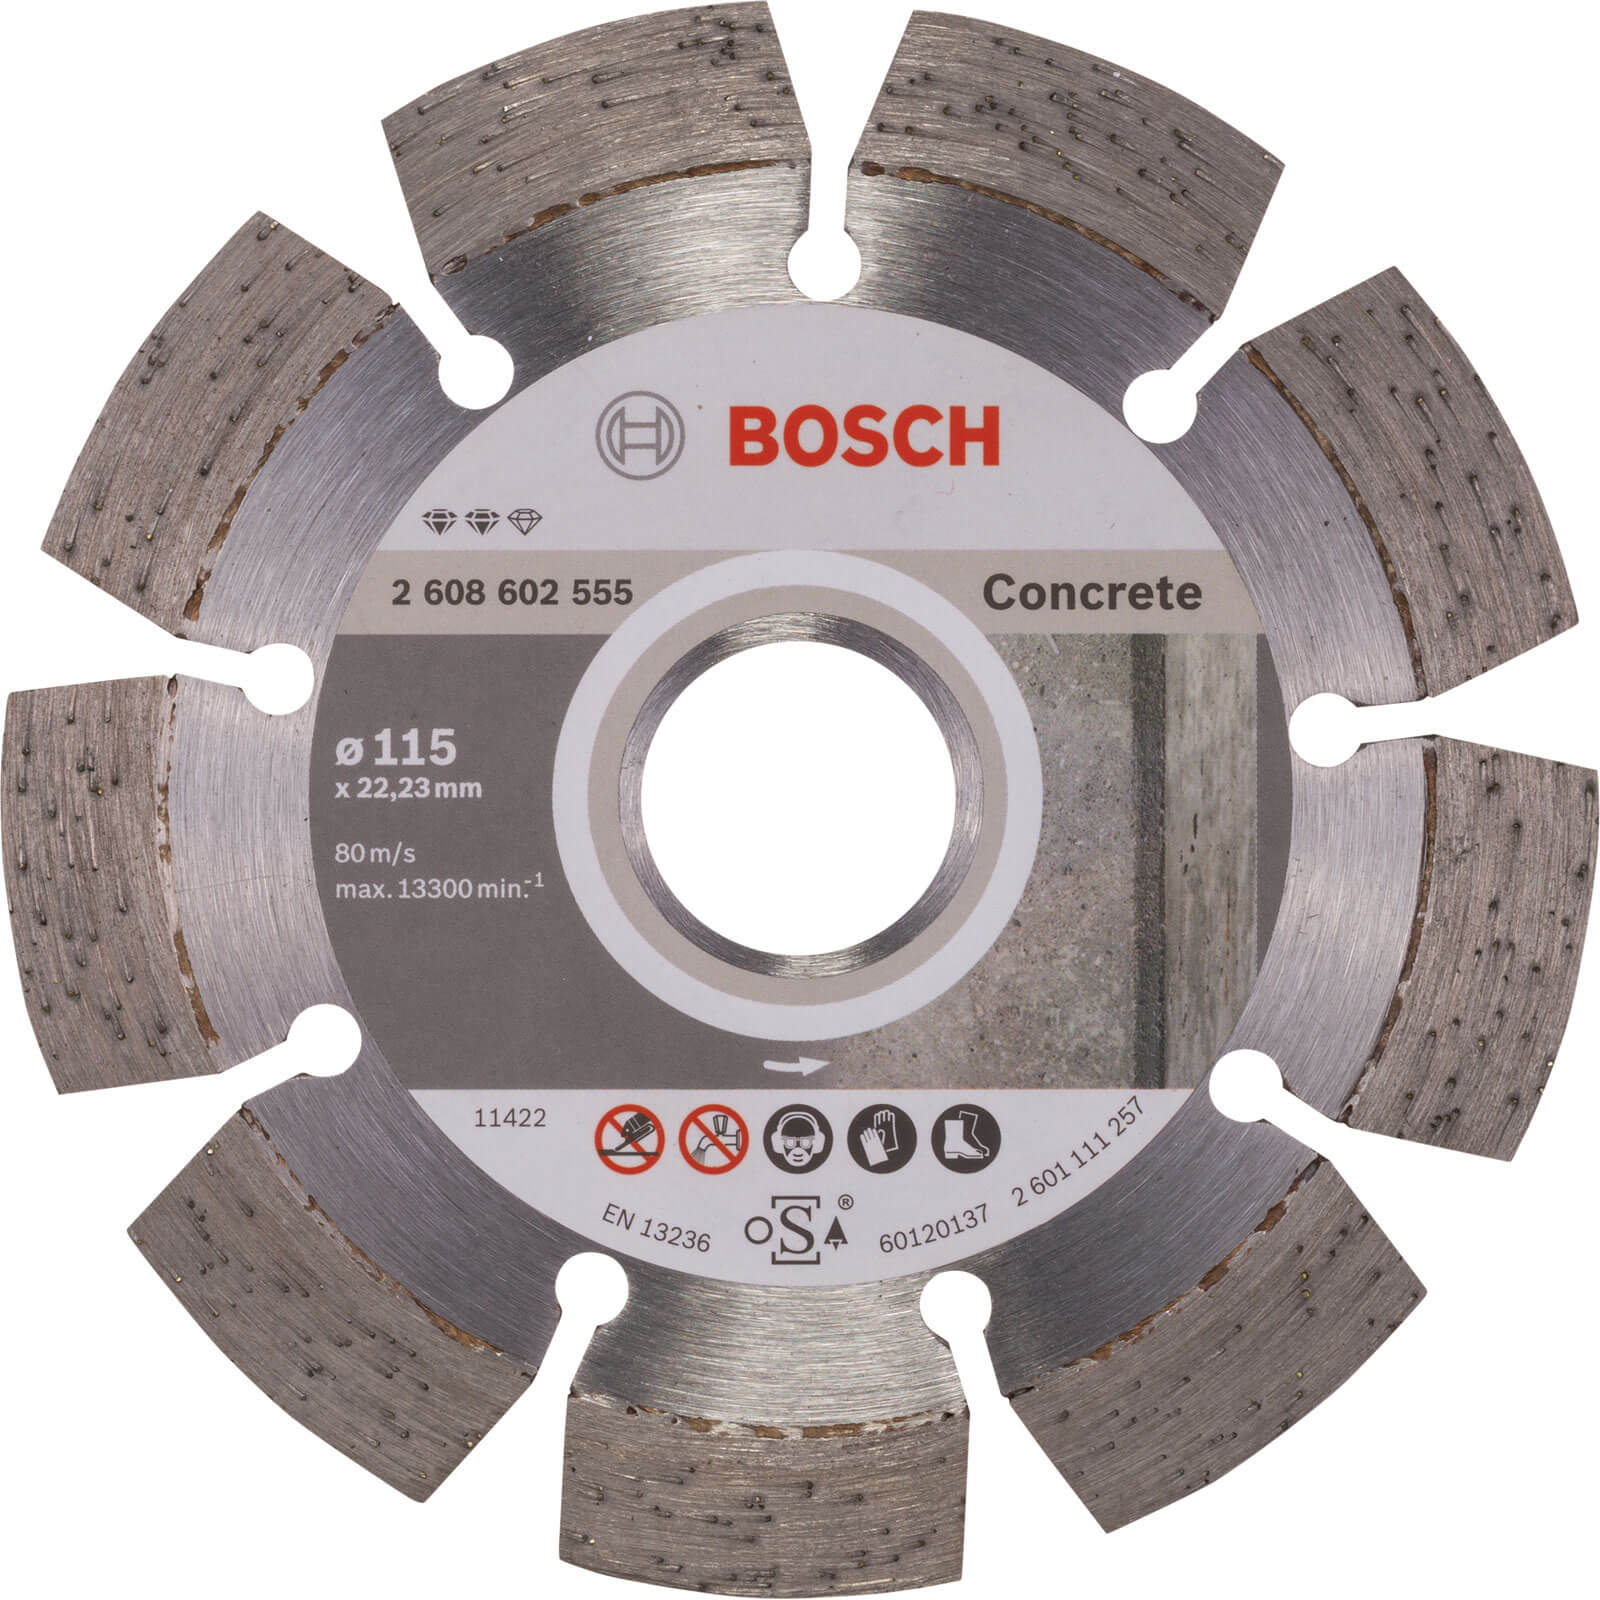 Bosch Expert Concrete Diamond Cutting Disc | Cutting Discs